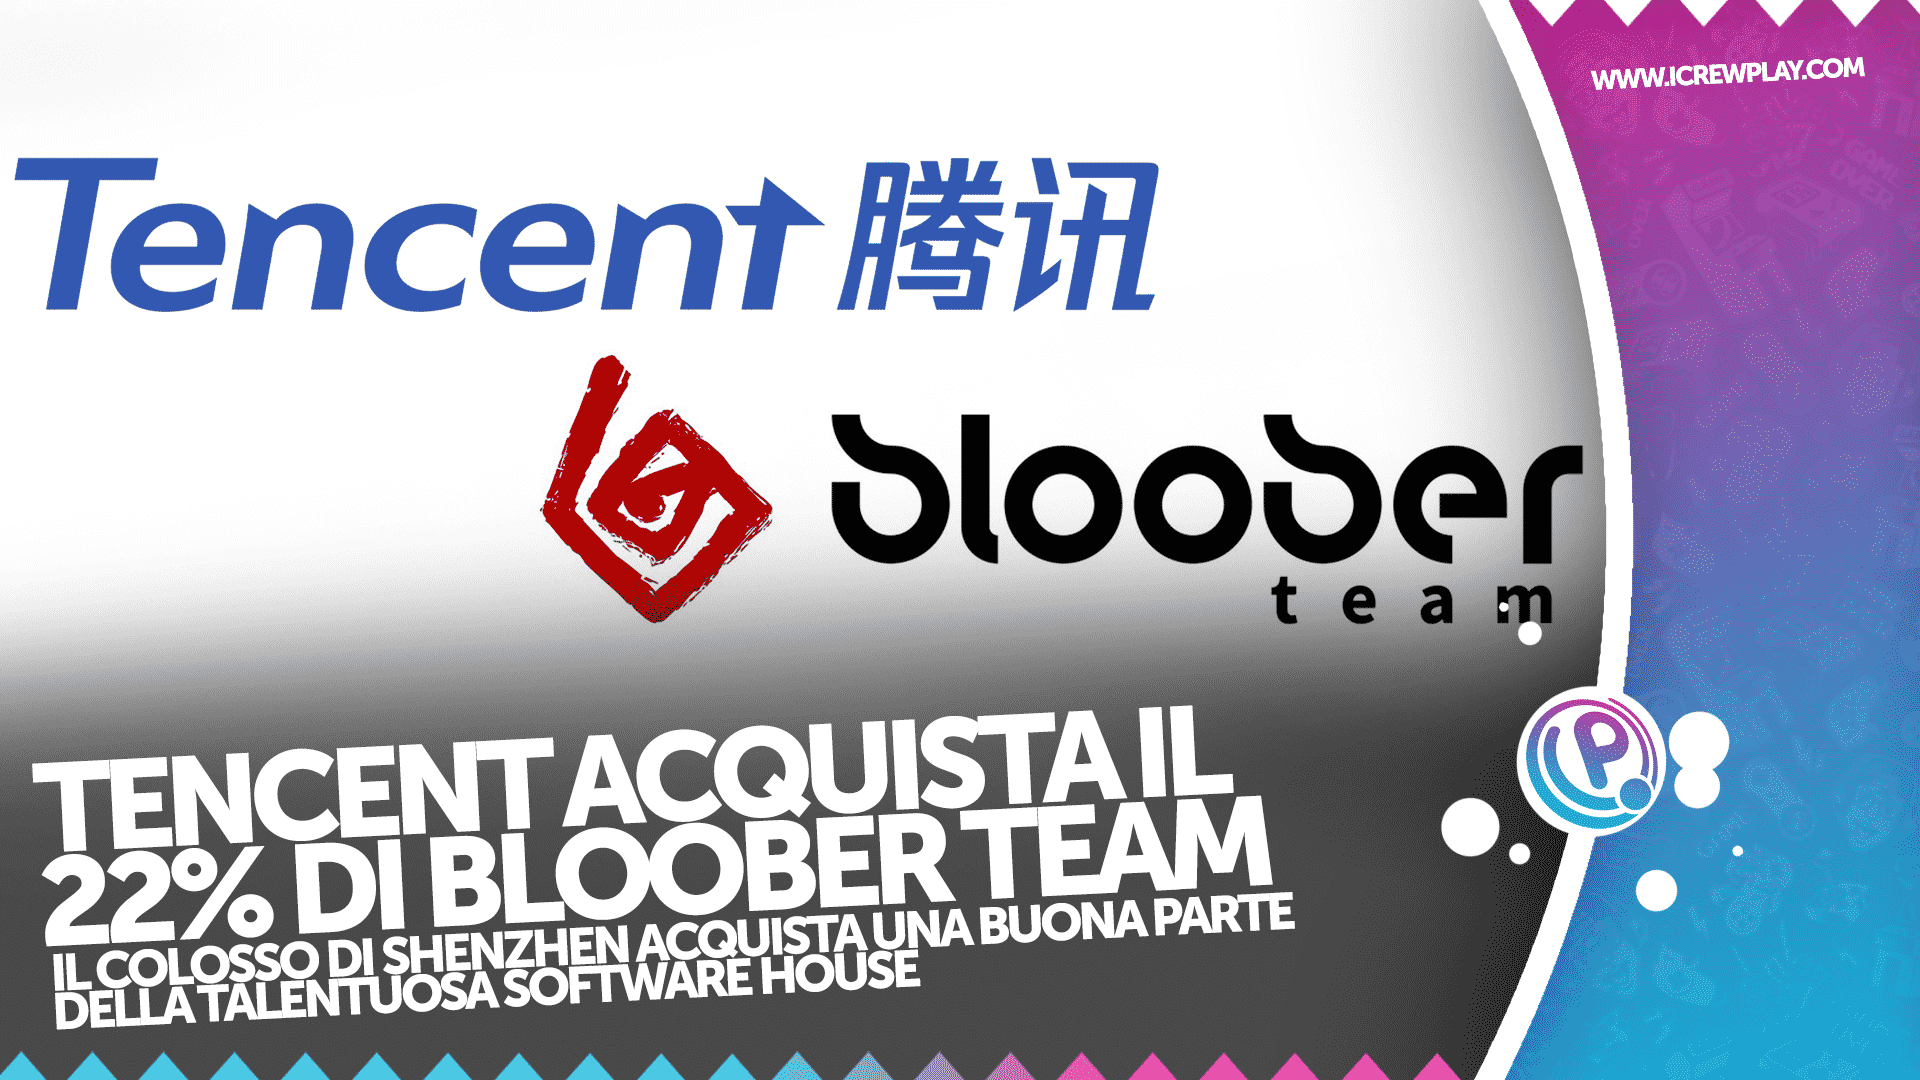 Tencent acquista il 22% di Bloober Team 2